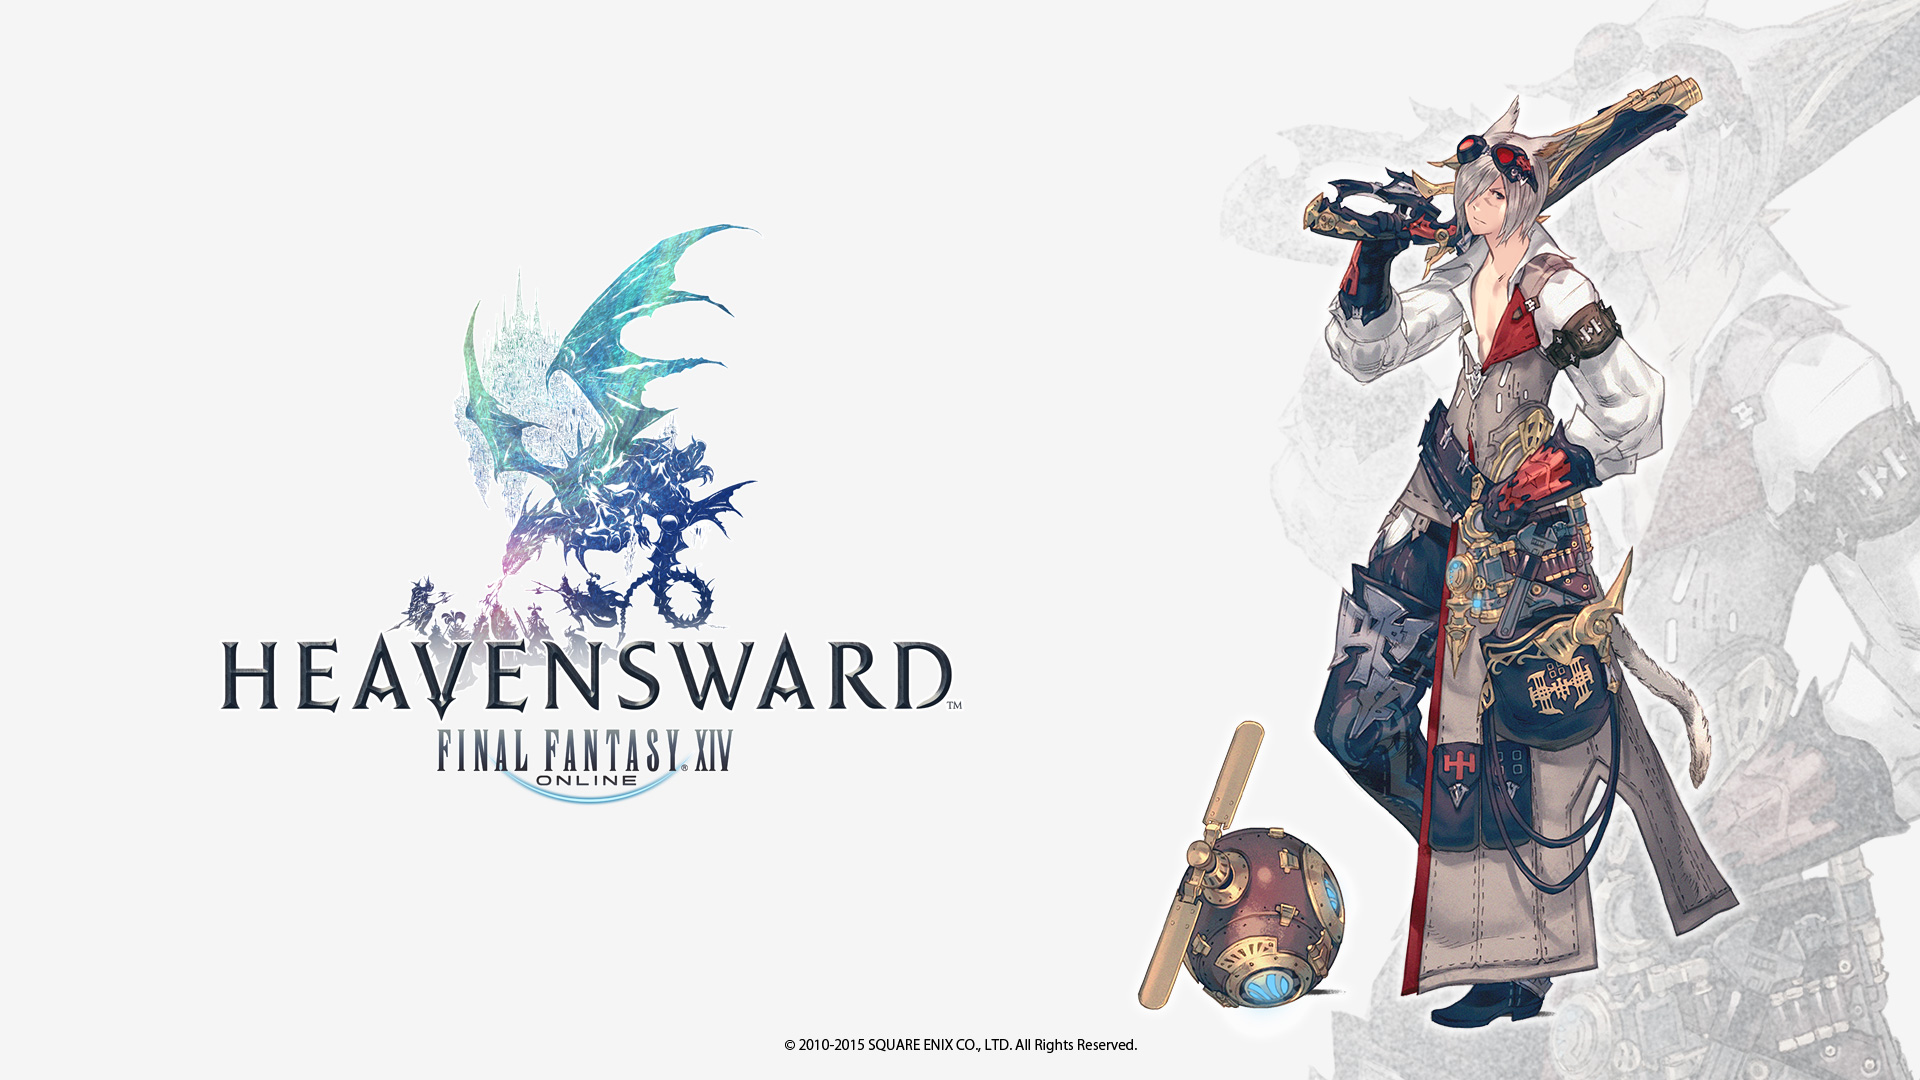 Final square enix. Final Fantasy 14. Final Fantasy XIV Heavensward. Final Fantasy XIV A Realm Reborn Постер. Final Fantasy XIV обои.